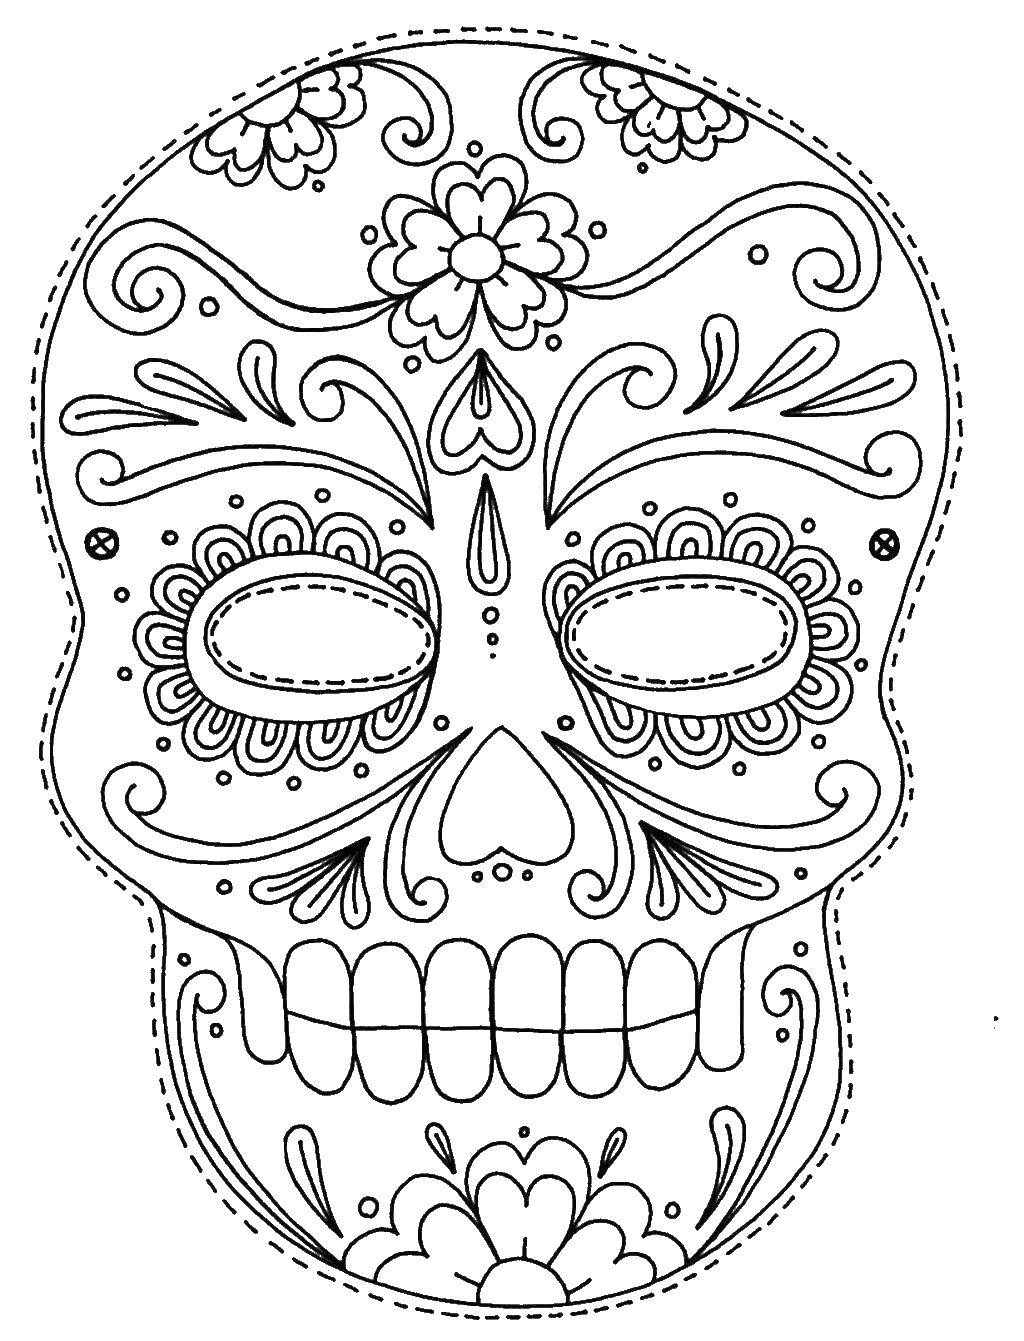 Coloring Skull. Category skull. Tags:  skull, patterns, flowers.